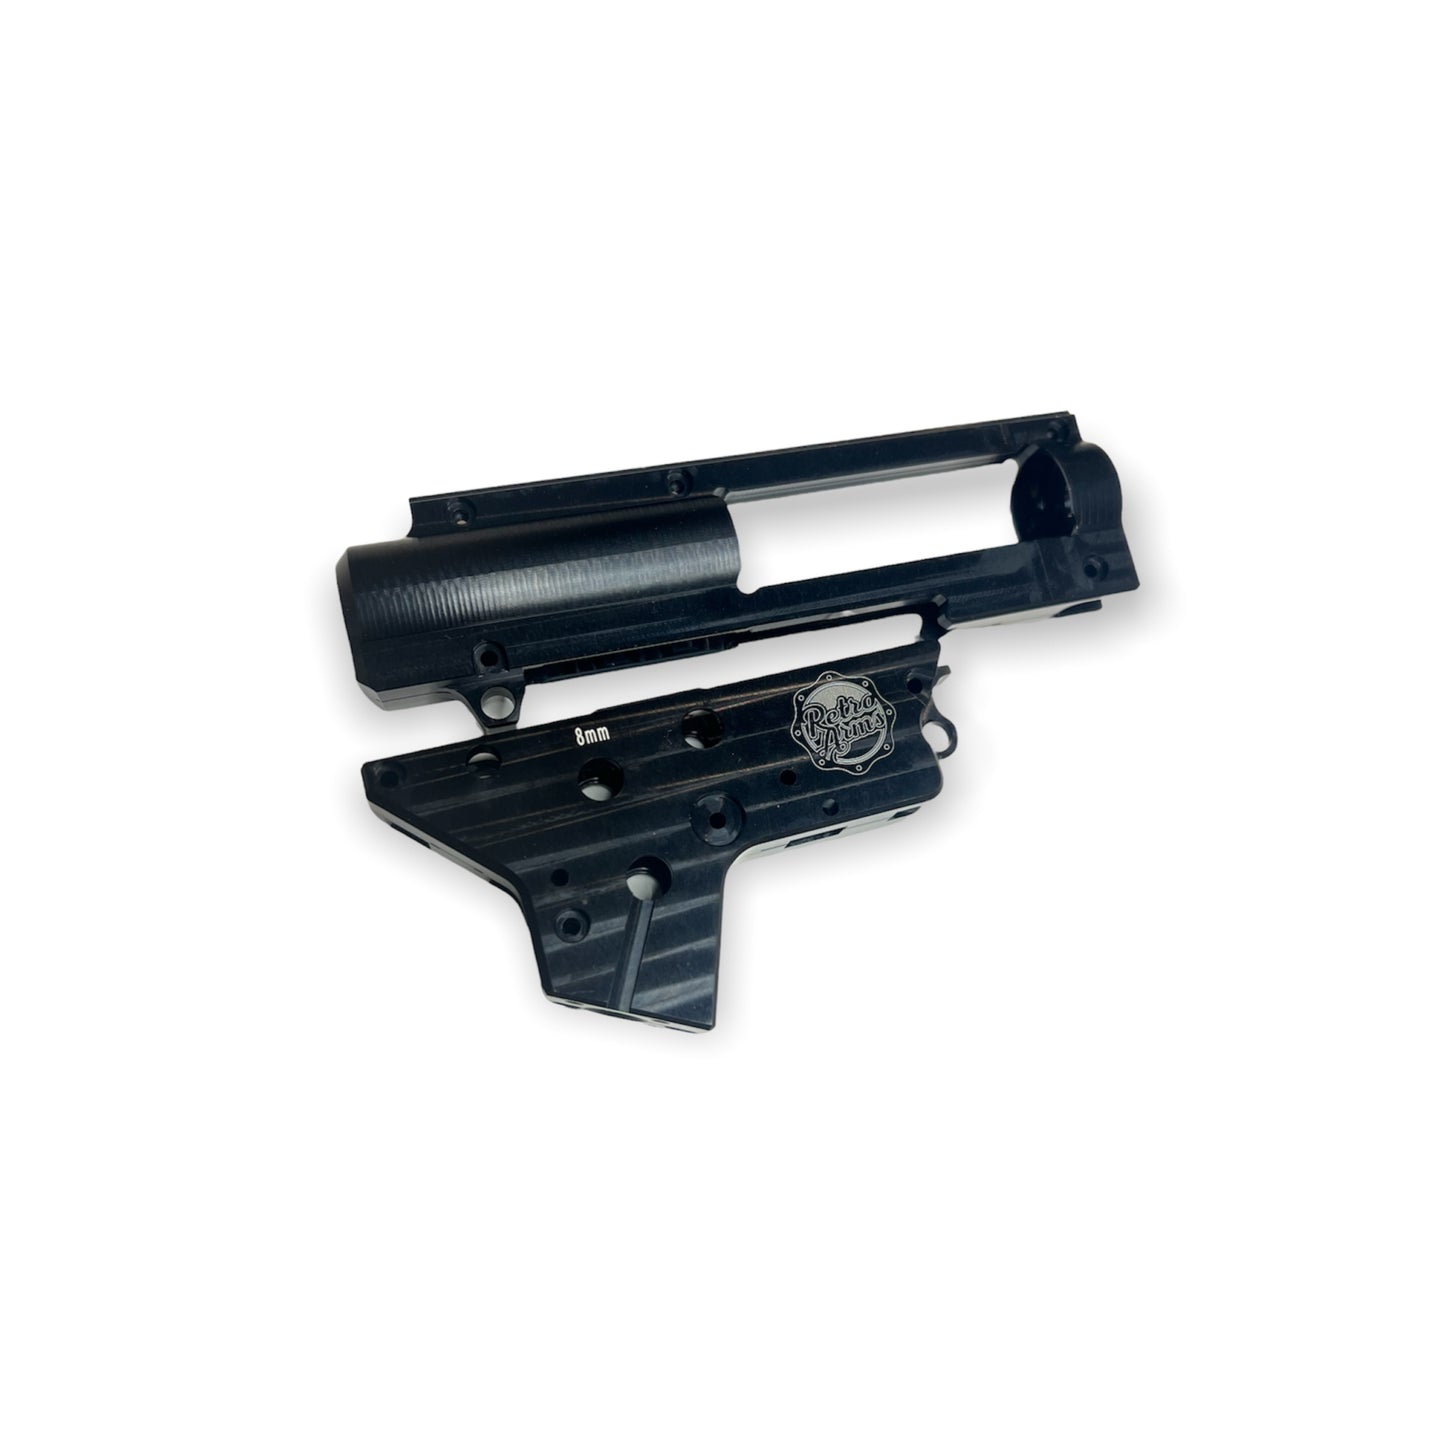 Retro Arms CNC Split Gearbox V2